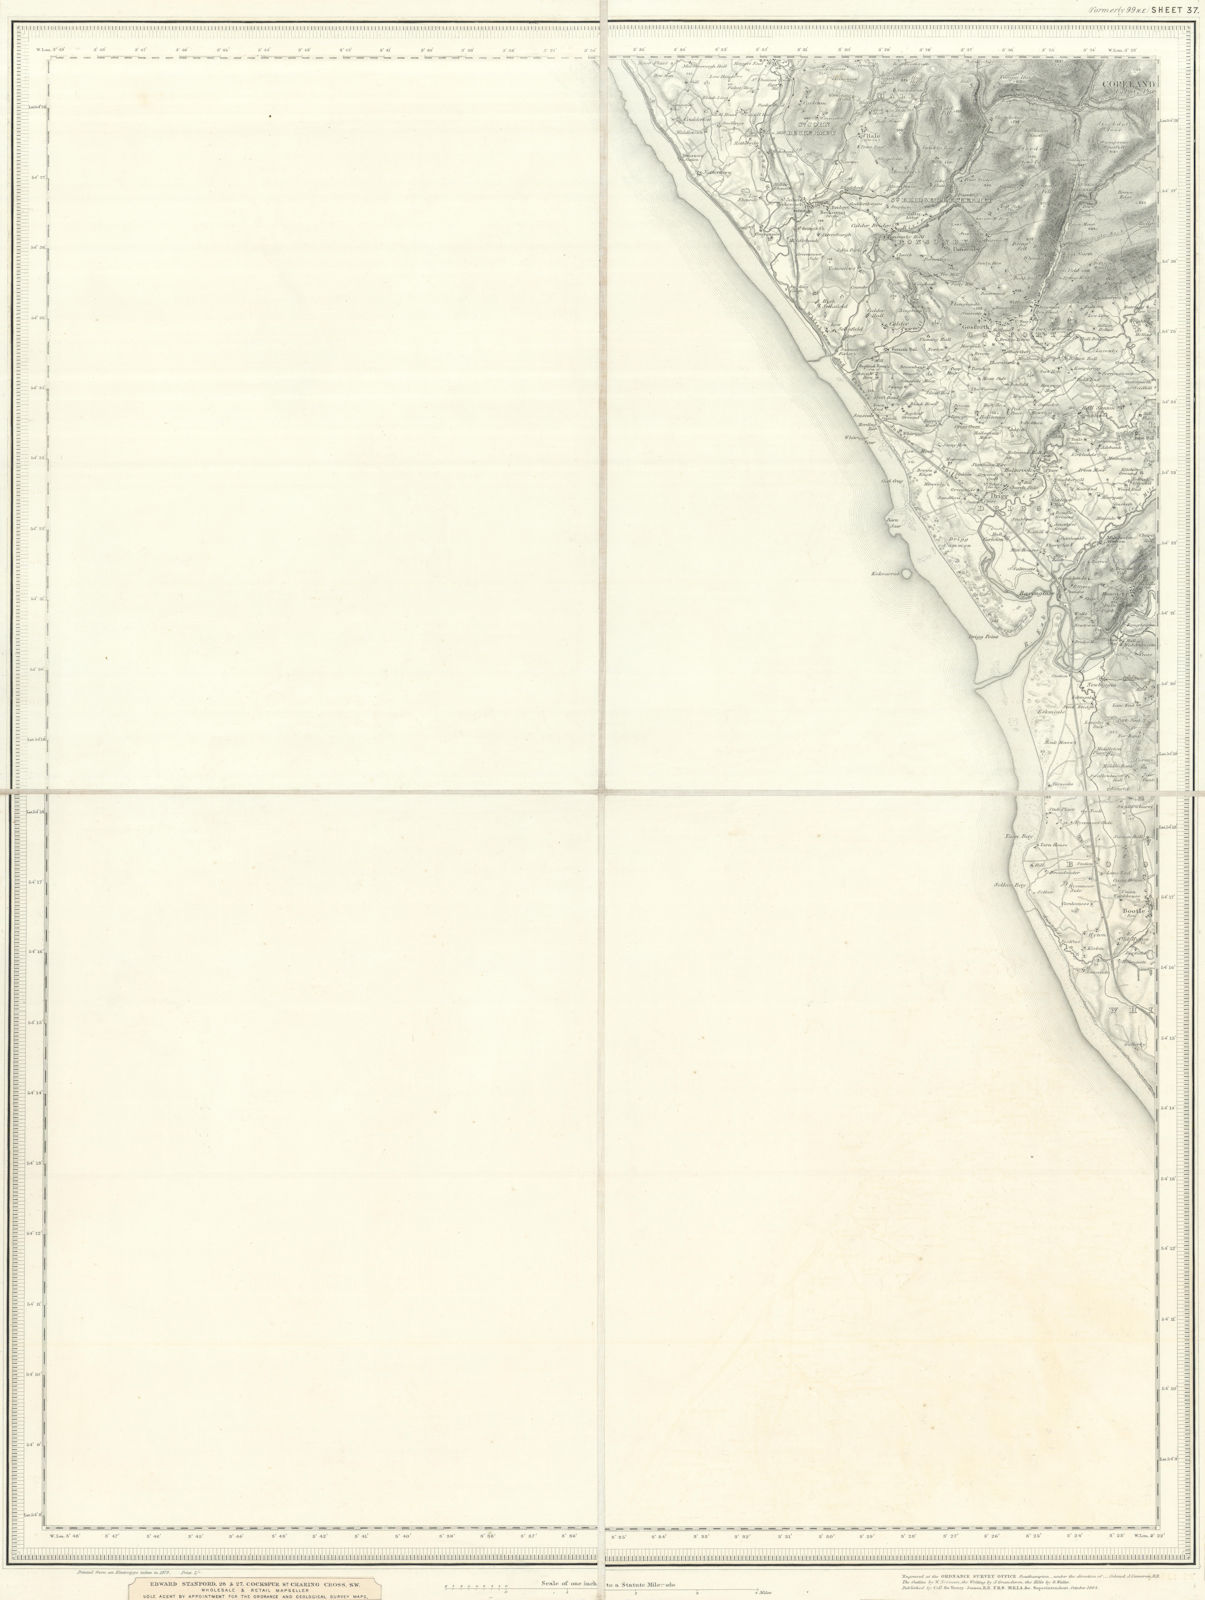 OS #99 Cumbria Coast. Gosforth Ravenglass Sellafield Bootle Copeland 1879 map